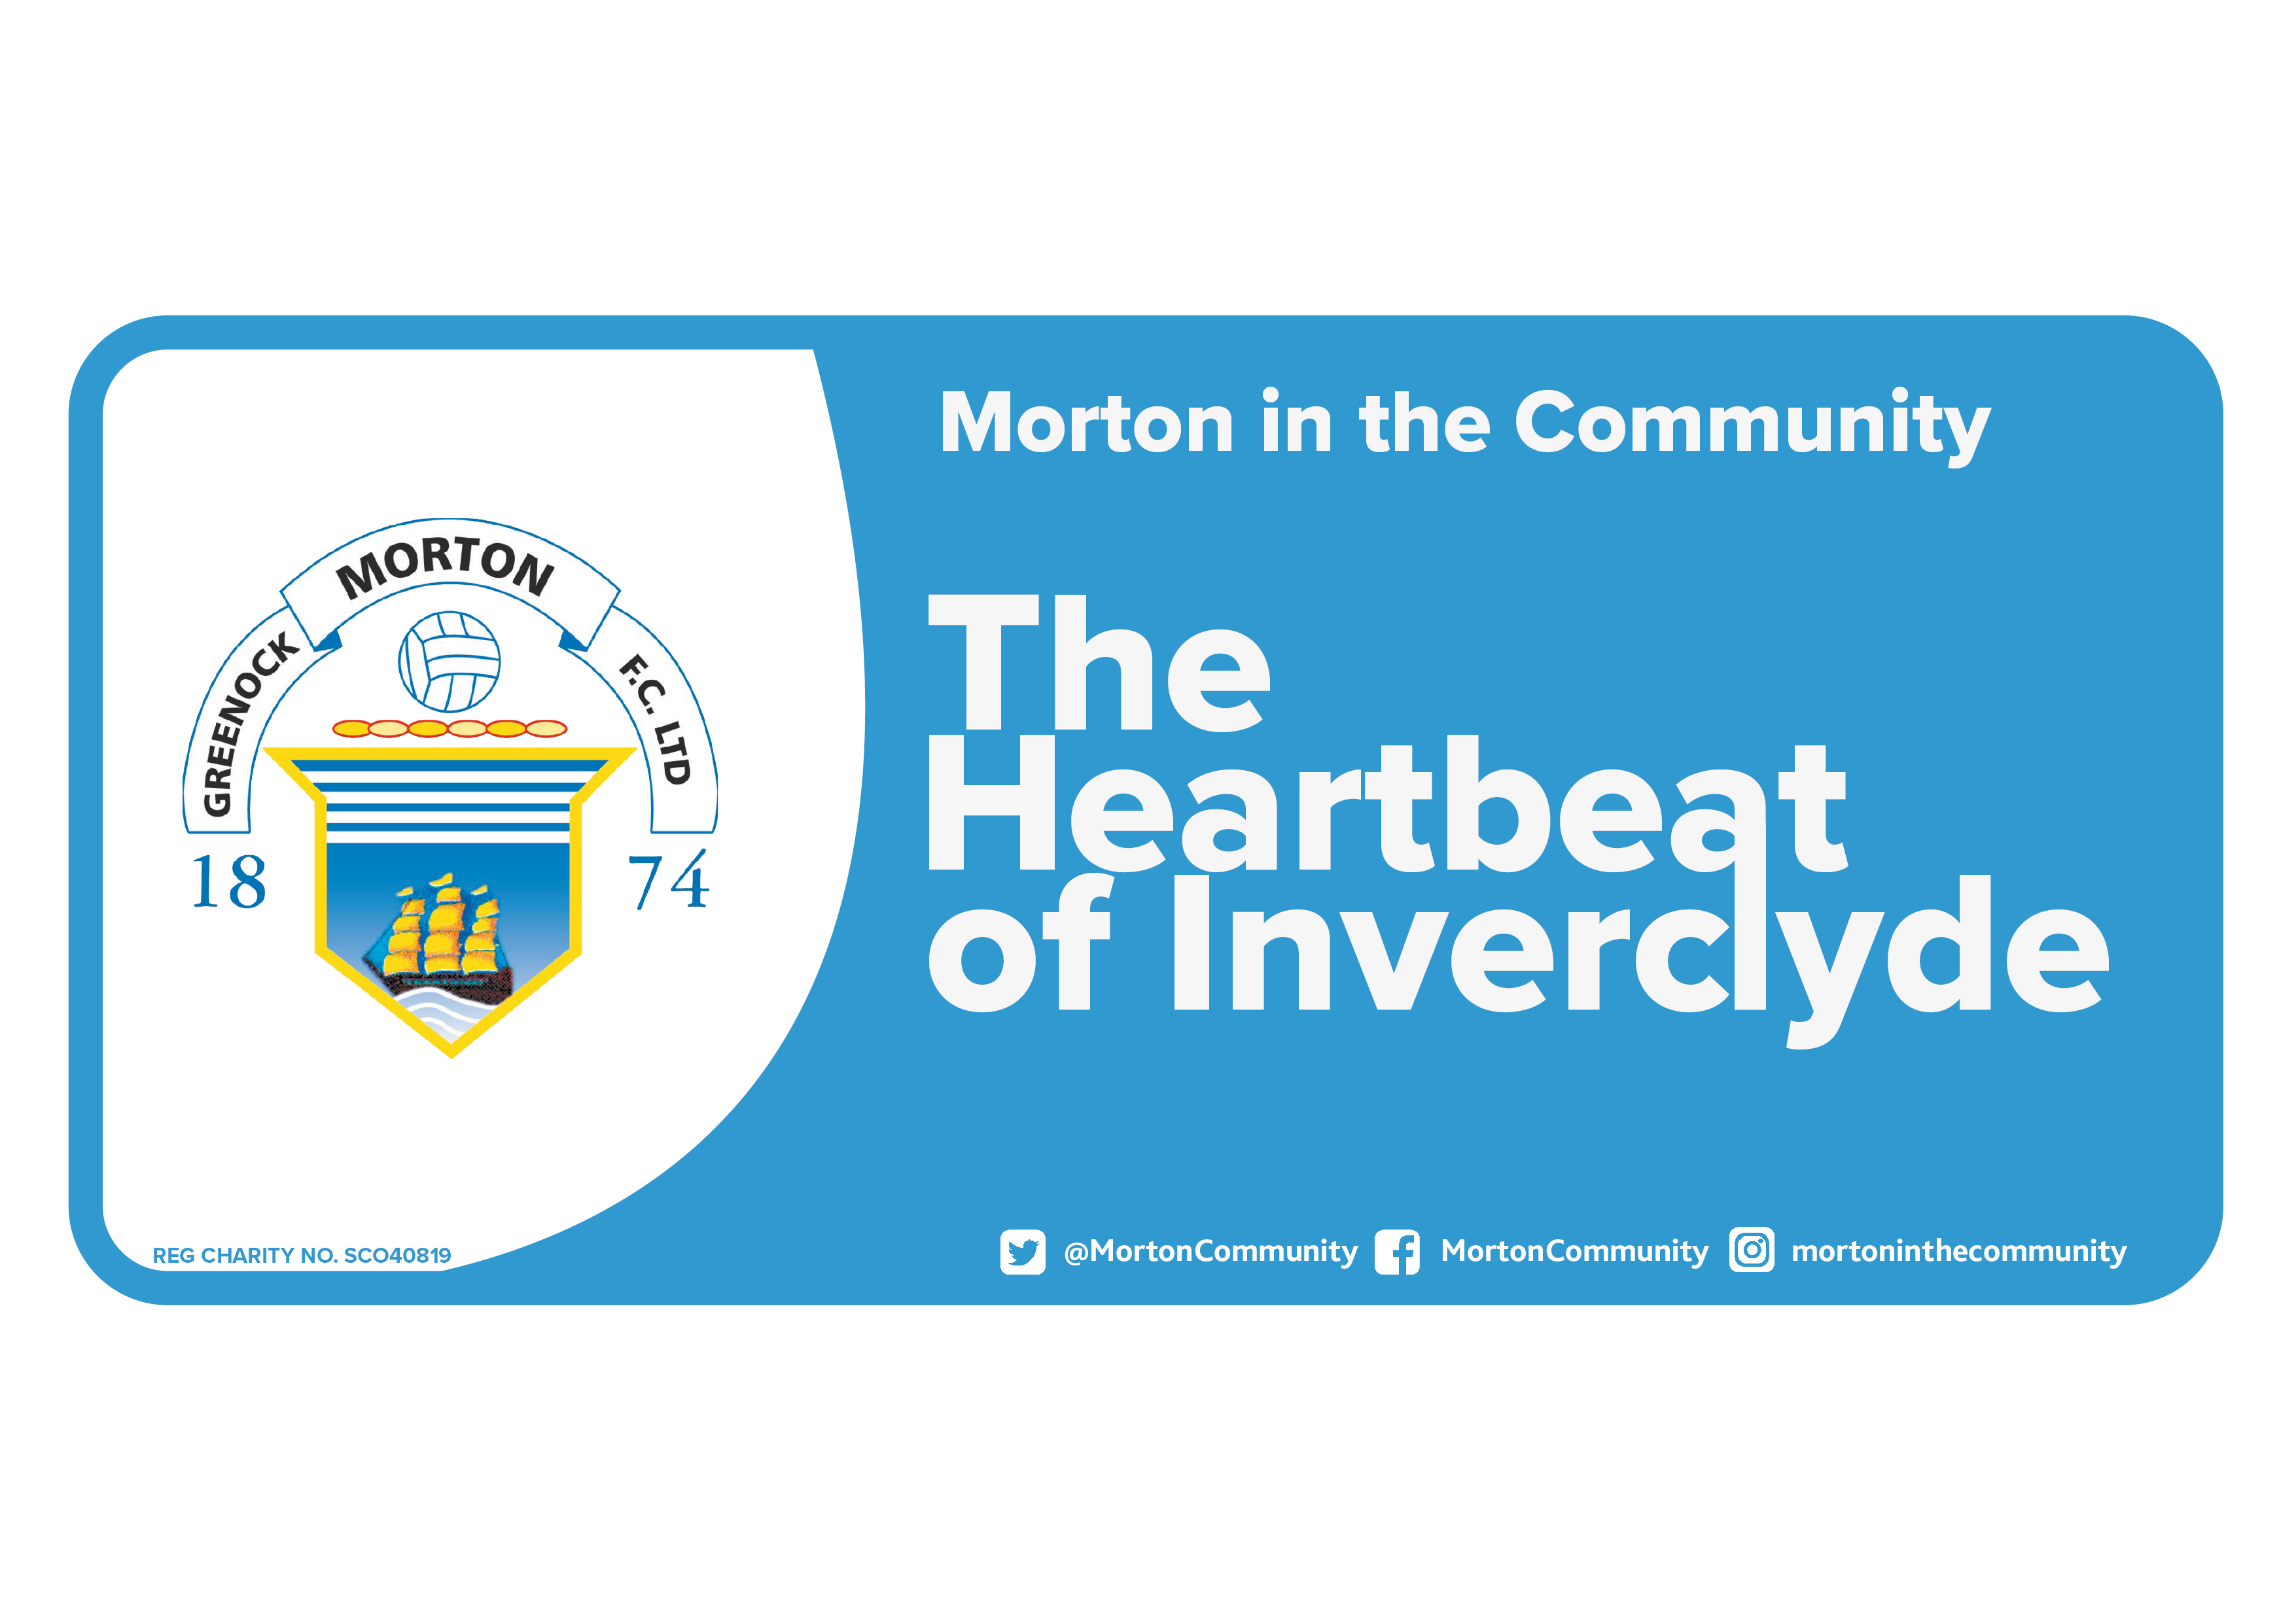 Morton in the Community